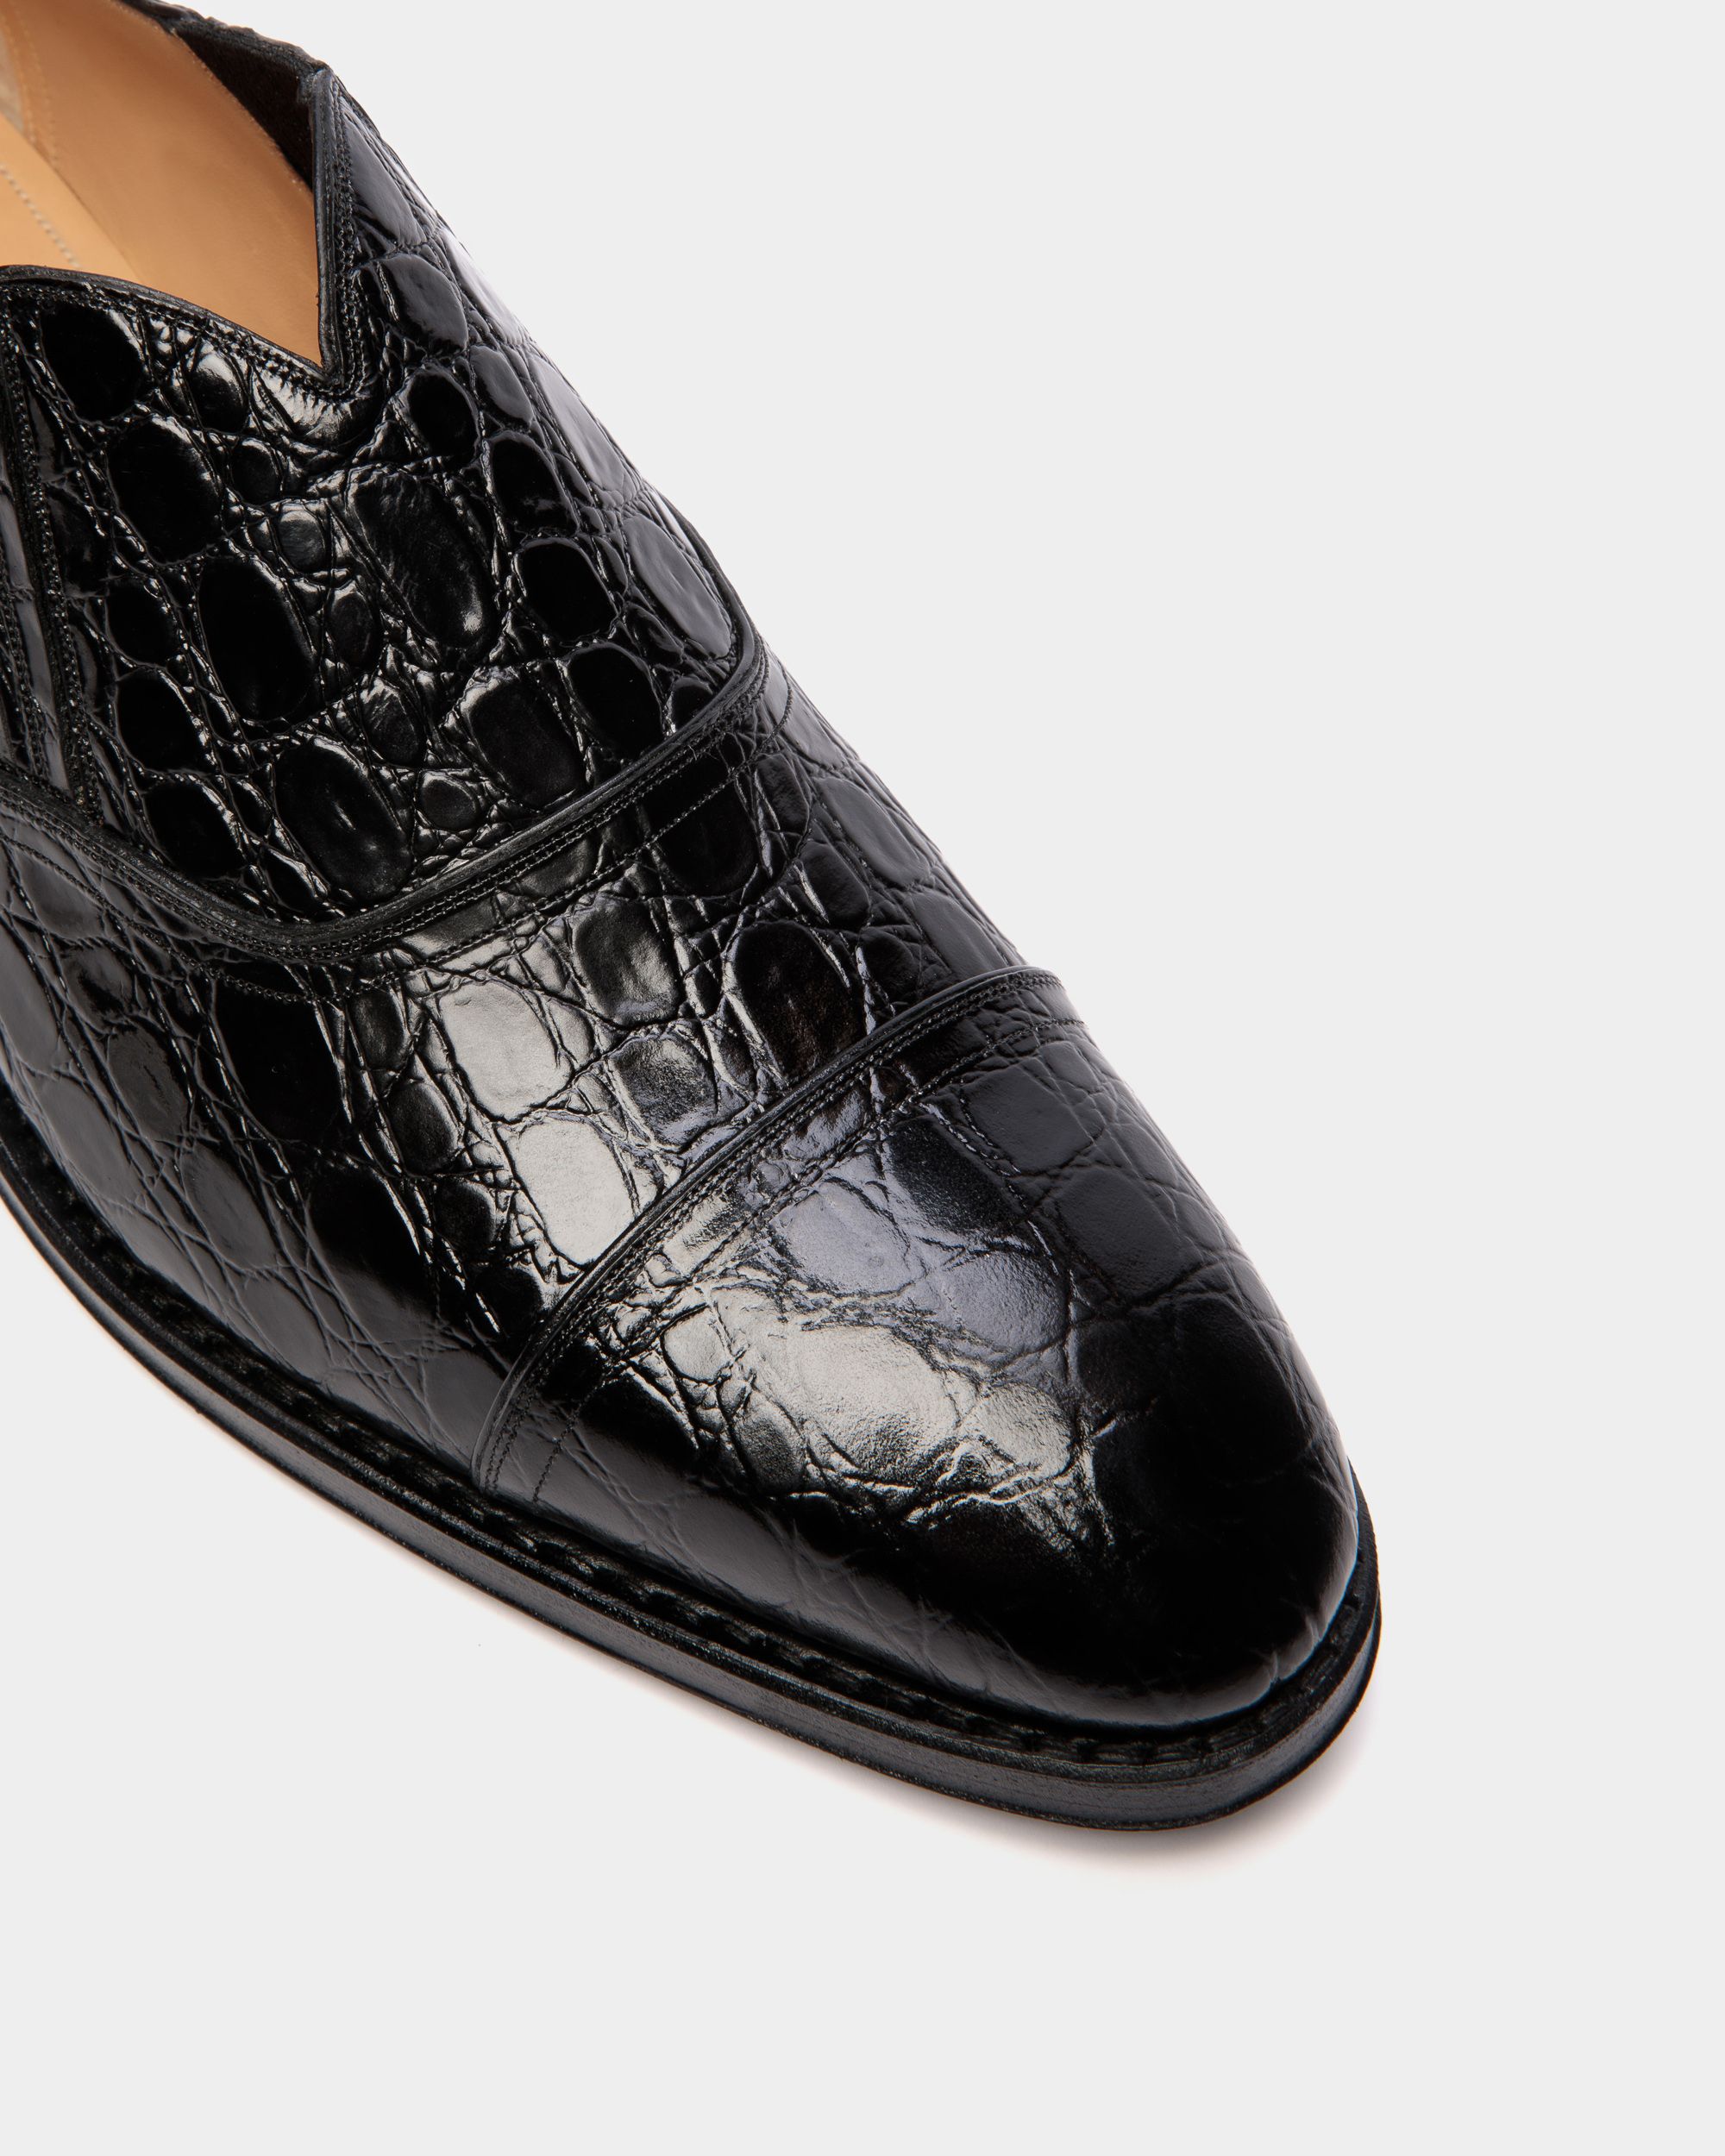 Scribe | Loafers für Herren aus bedrucktem Leder in Schwarz | Bally | Still Life Detail